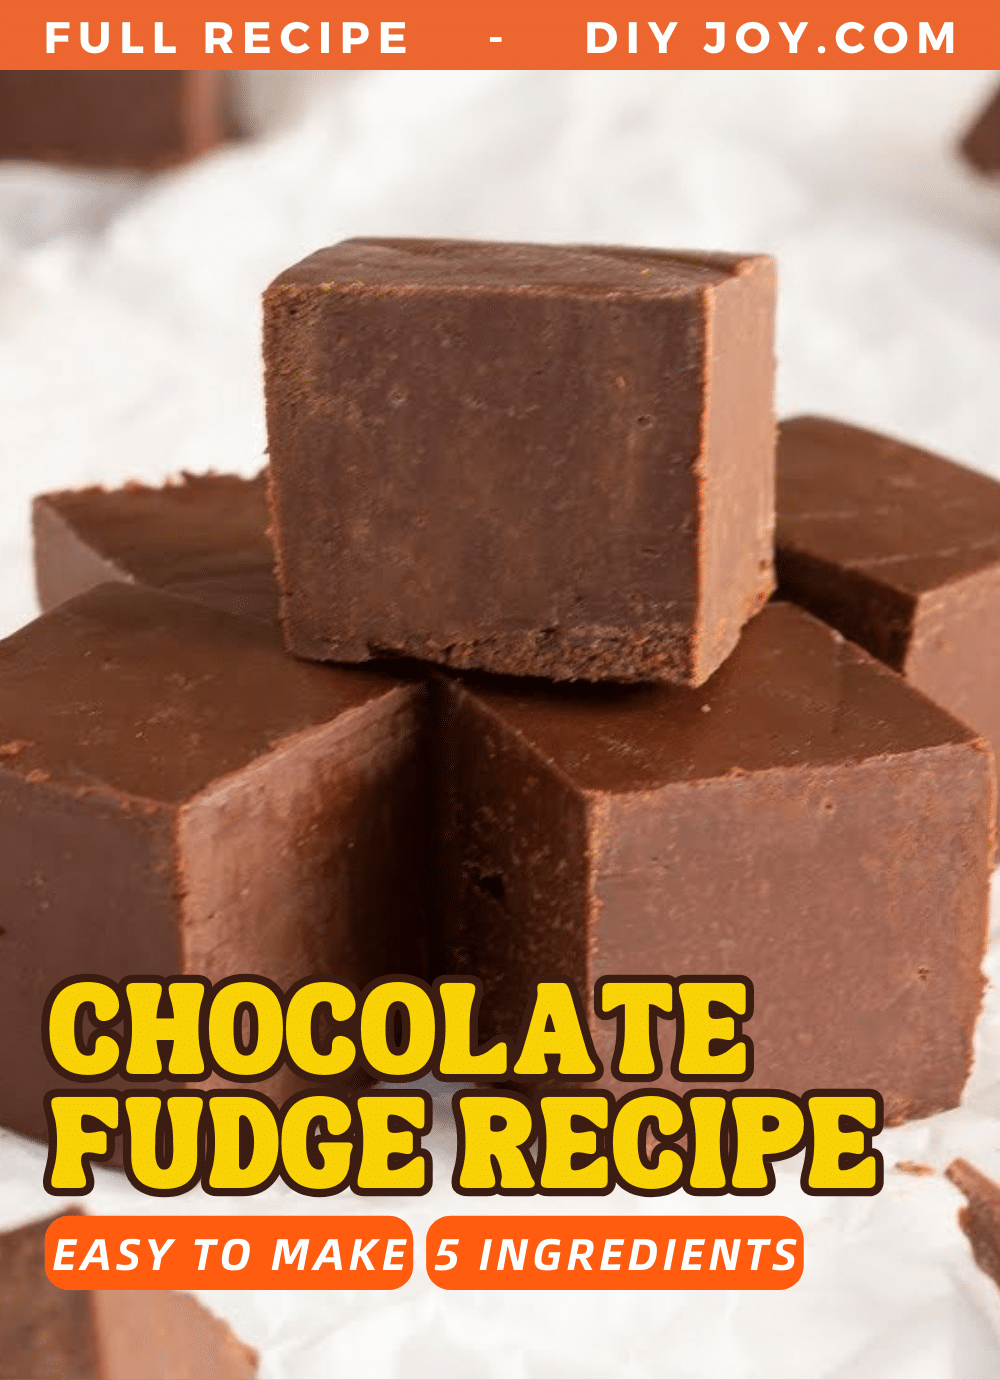 5-Ingredient Chocolate Fudge Recipe